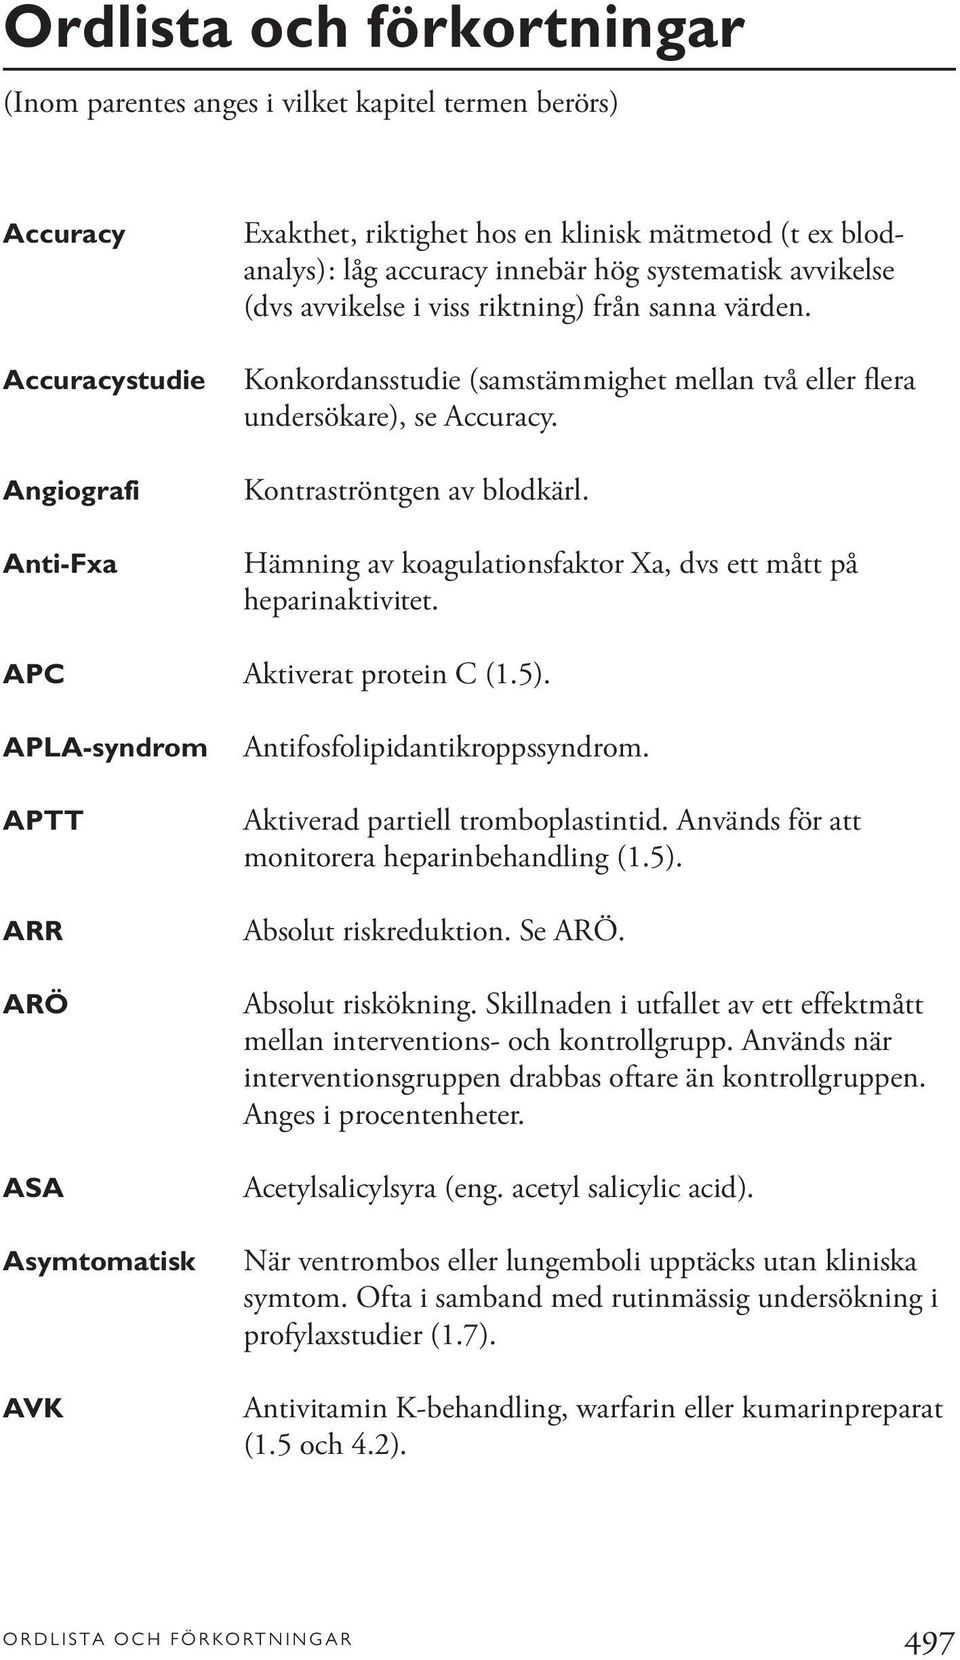 Hämning av koagulationsfaktor Xa, dvs ett mått på heparinaktivitet. APC Aktiverat protein C (1.5). APLA-syndrom APTT ARR ARÖ ASA Asymtomatisk AVK Antifosfolipidantikroppssyndrom.